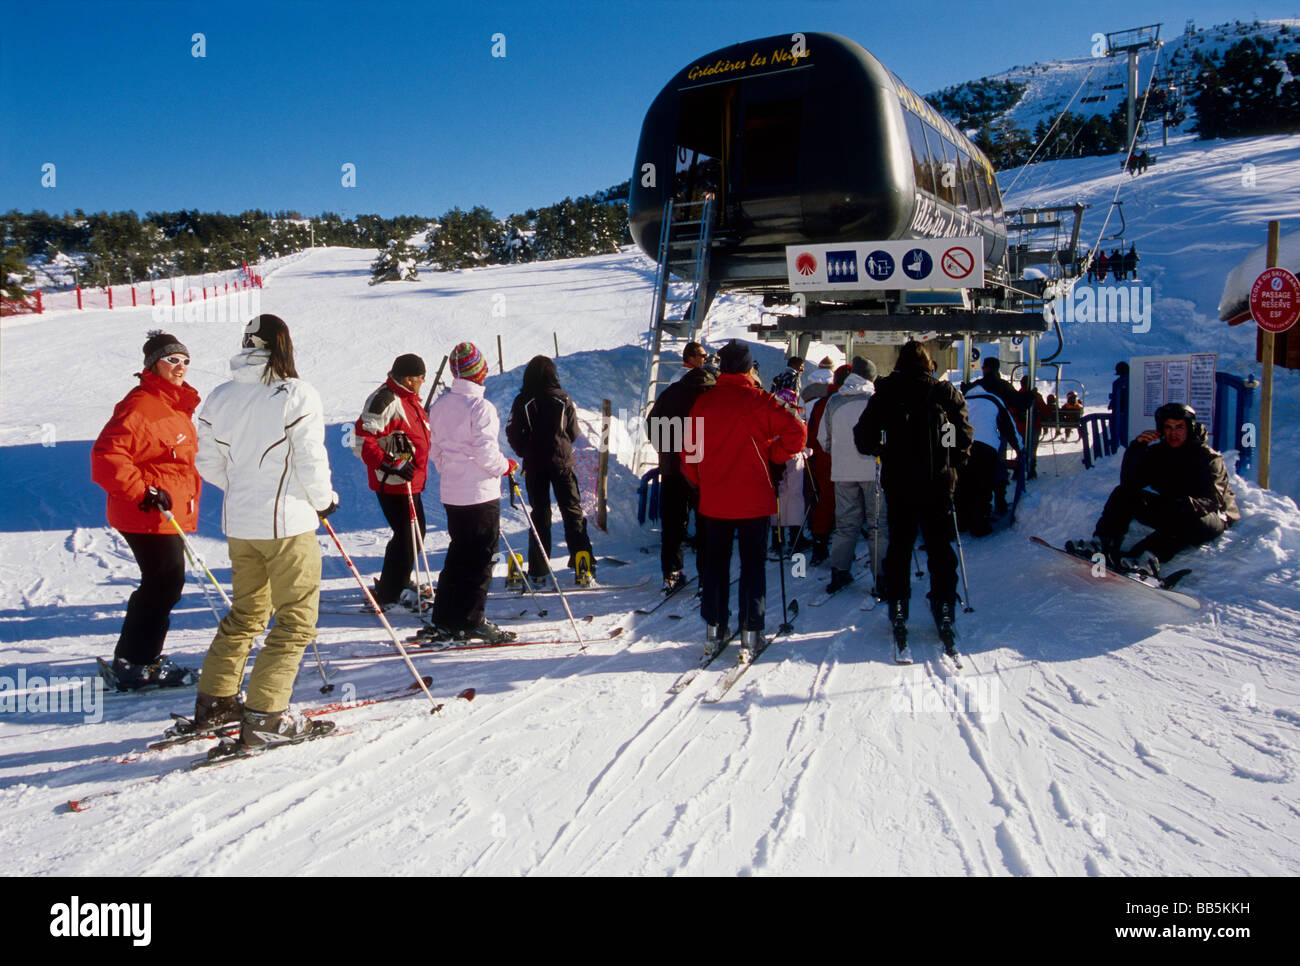 Les personnes en attente de l'ascenseur, président d'obtenir les sommets de la station de ski Banque D'Images